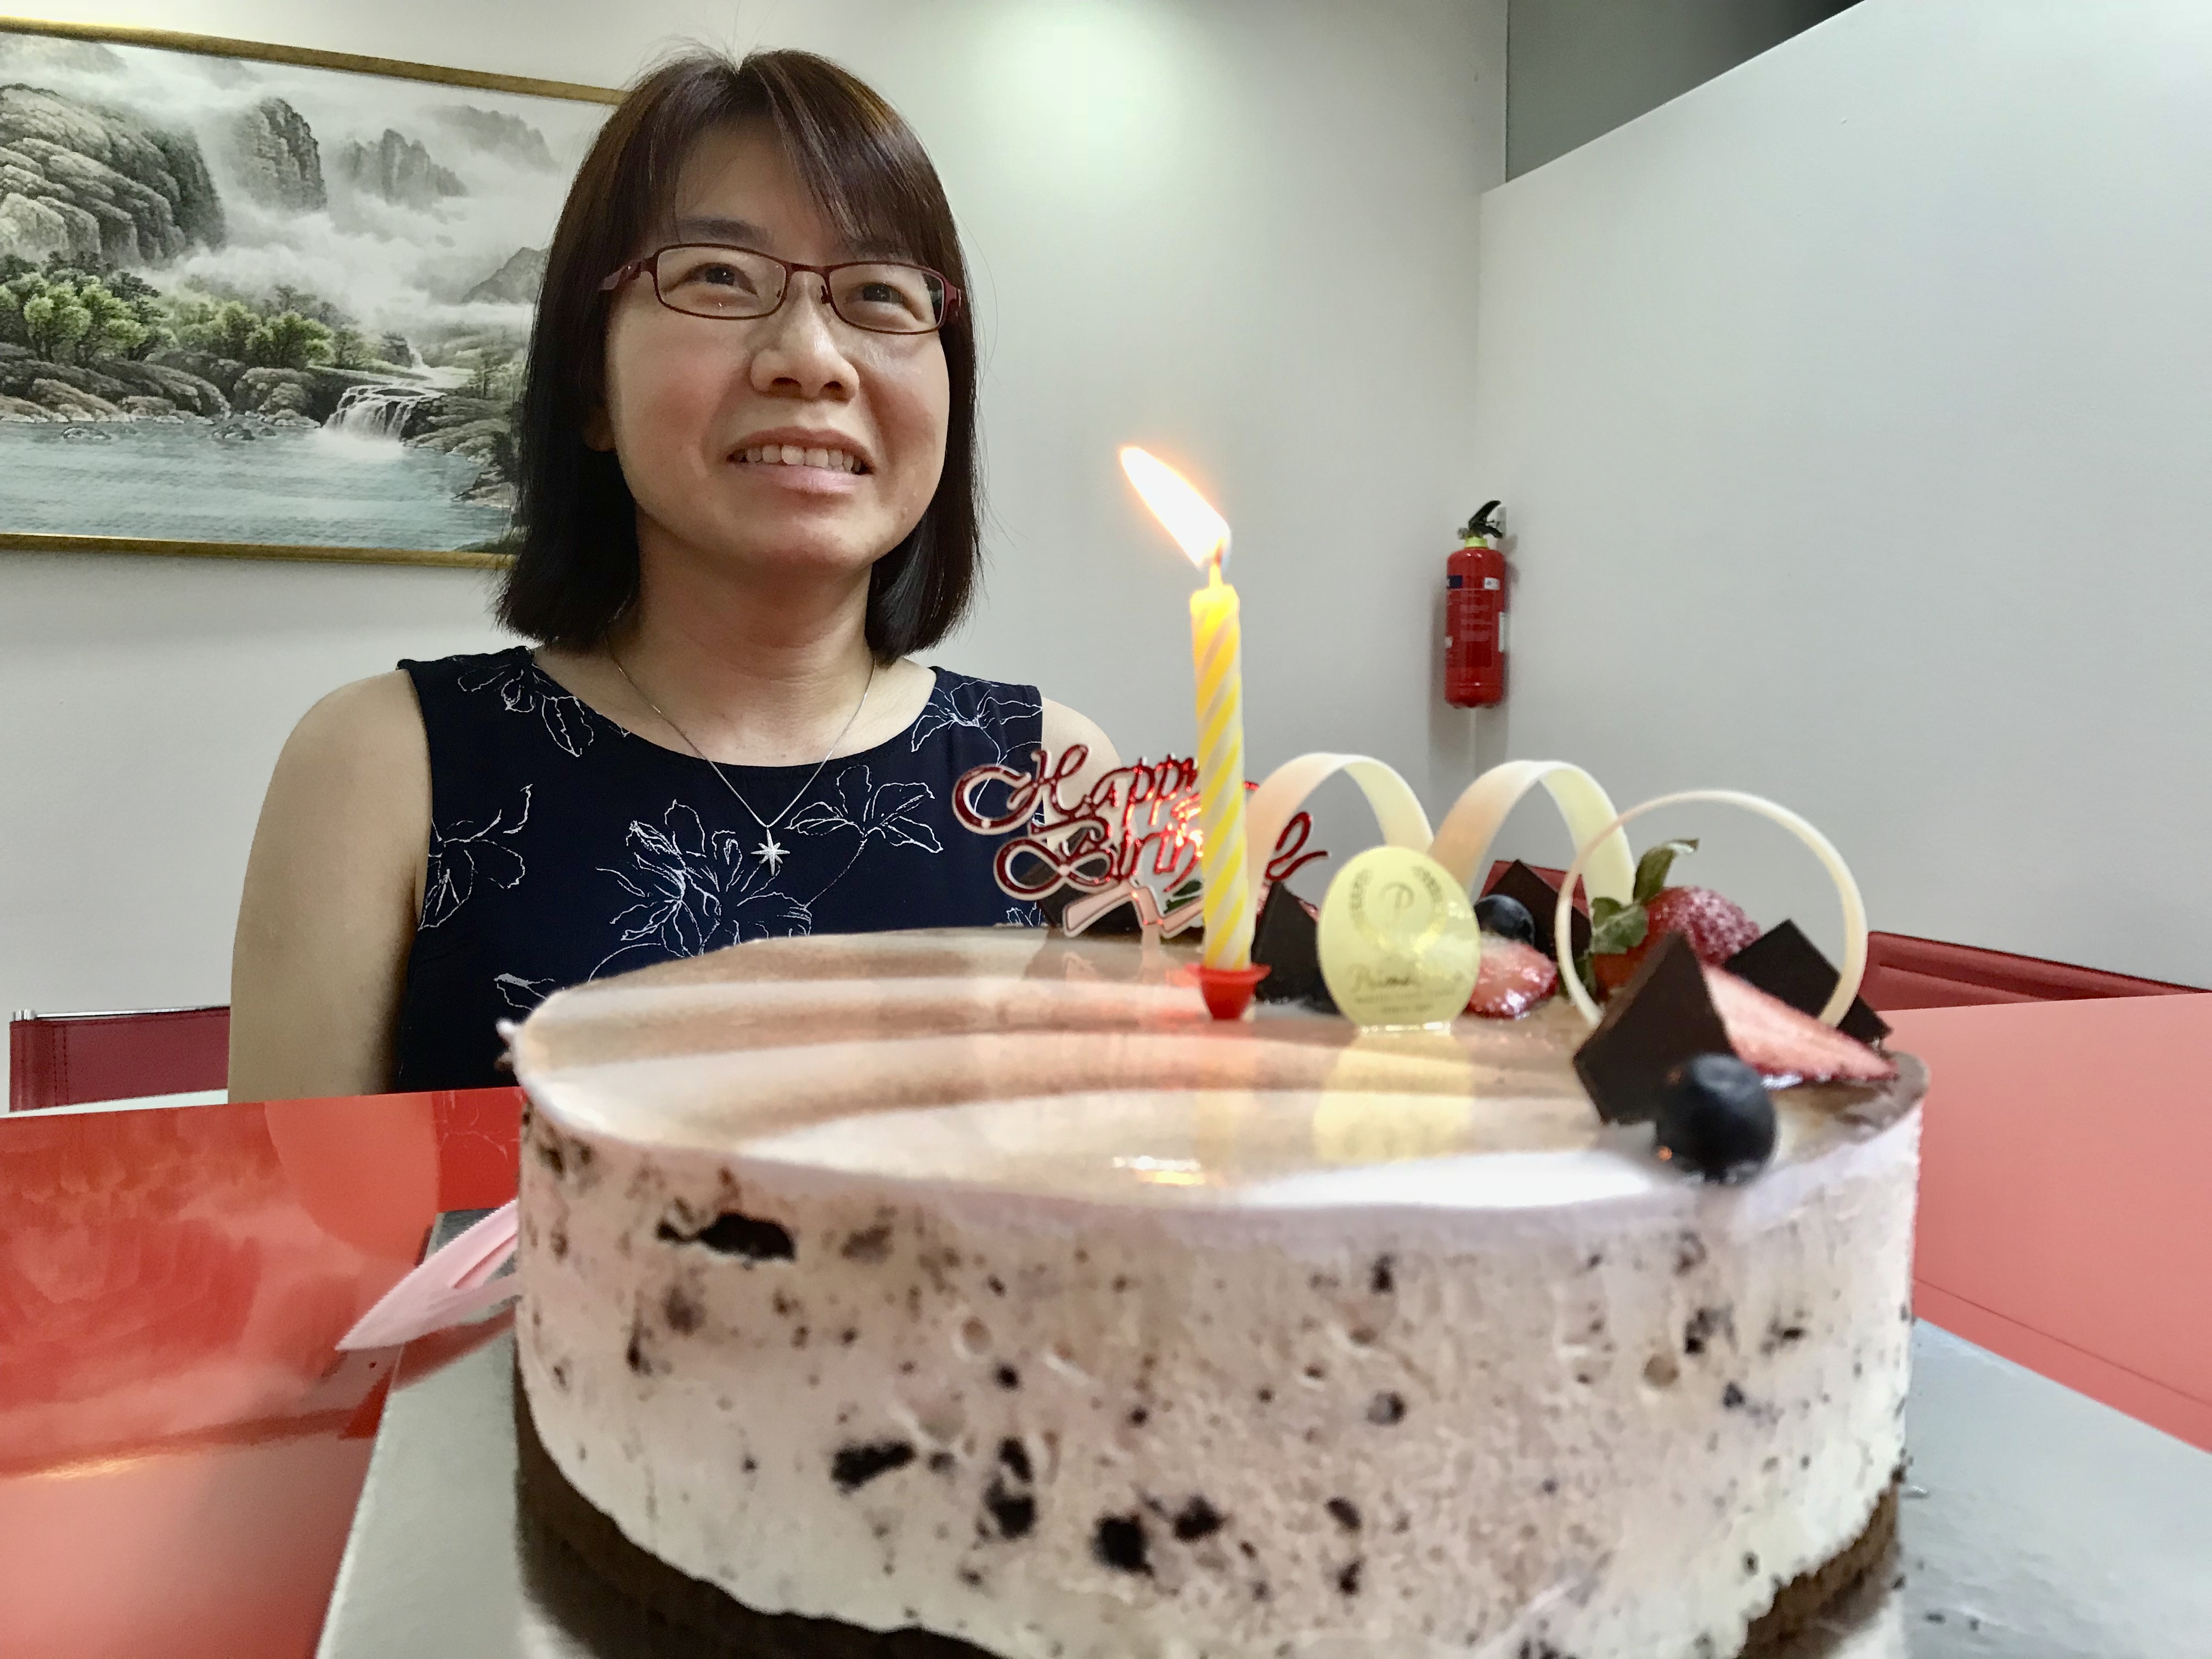 Celebrating Employee Birthdays